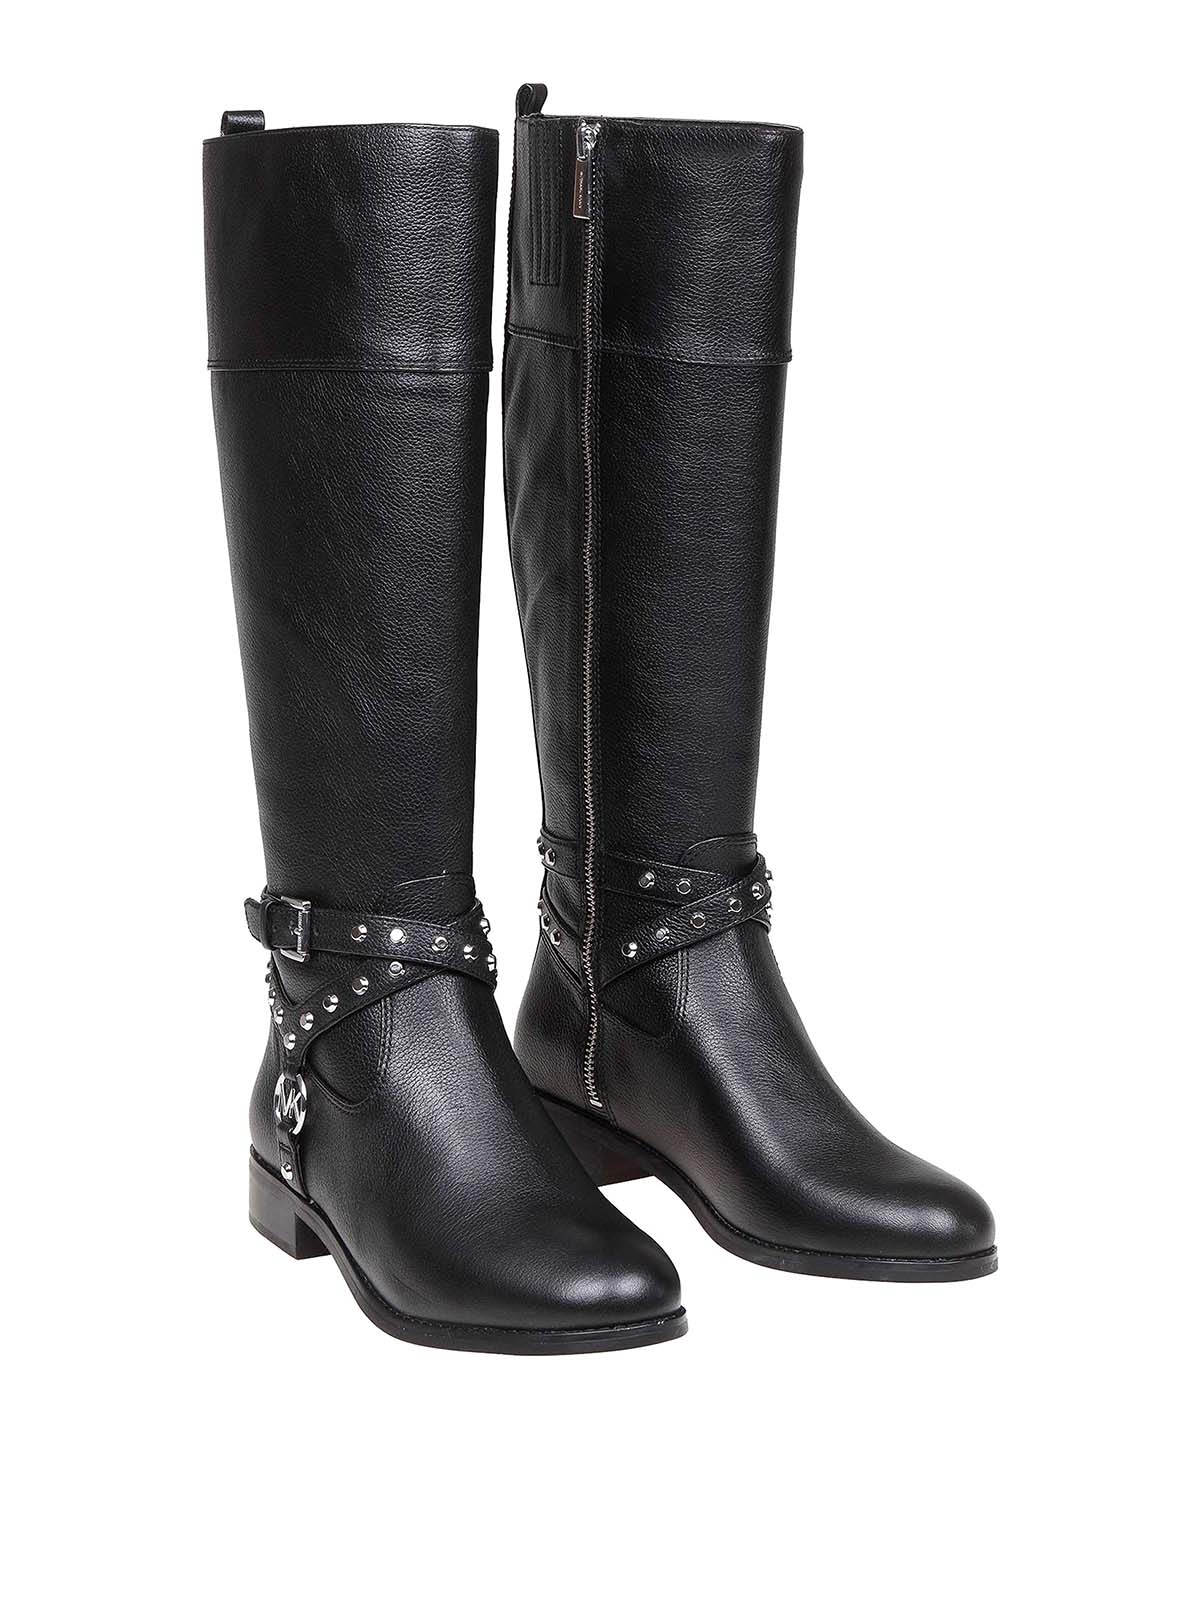 Boots Michael Kors - Preston leather boots - 40F9PRFB6L001 